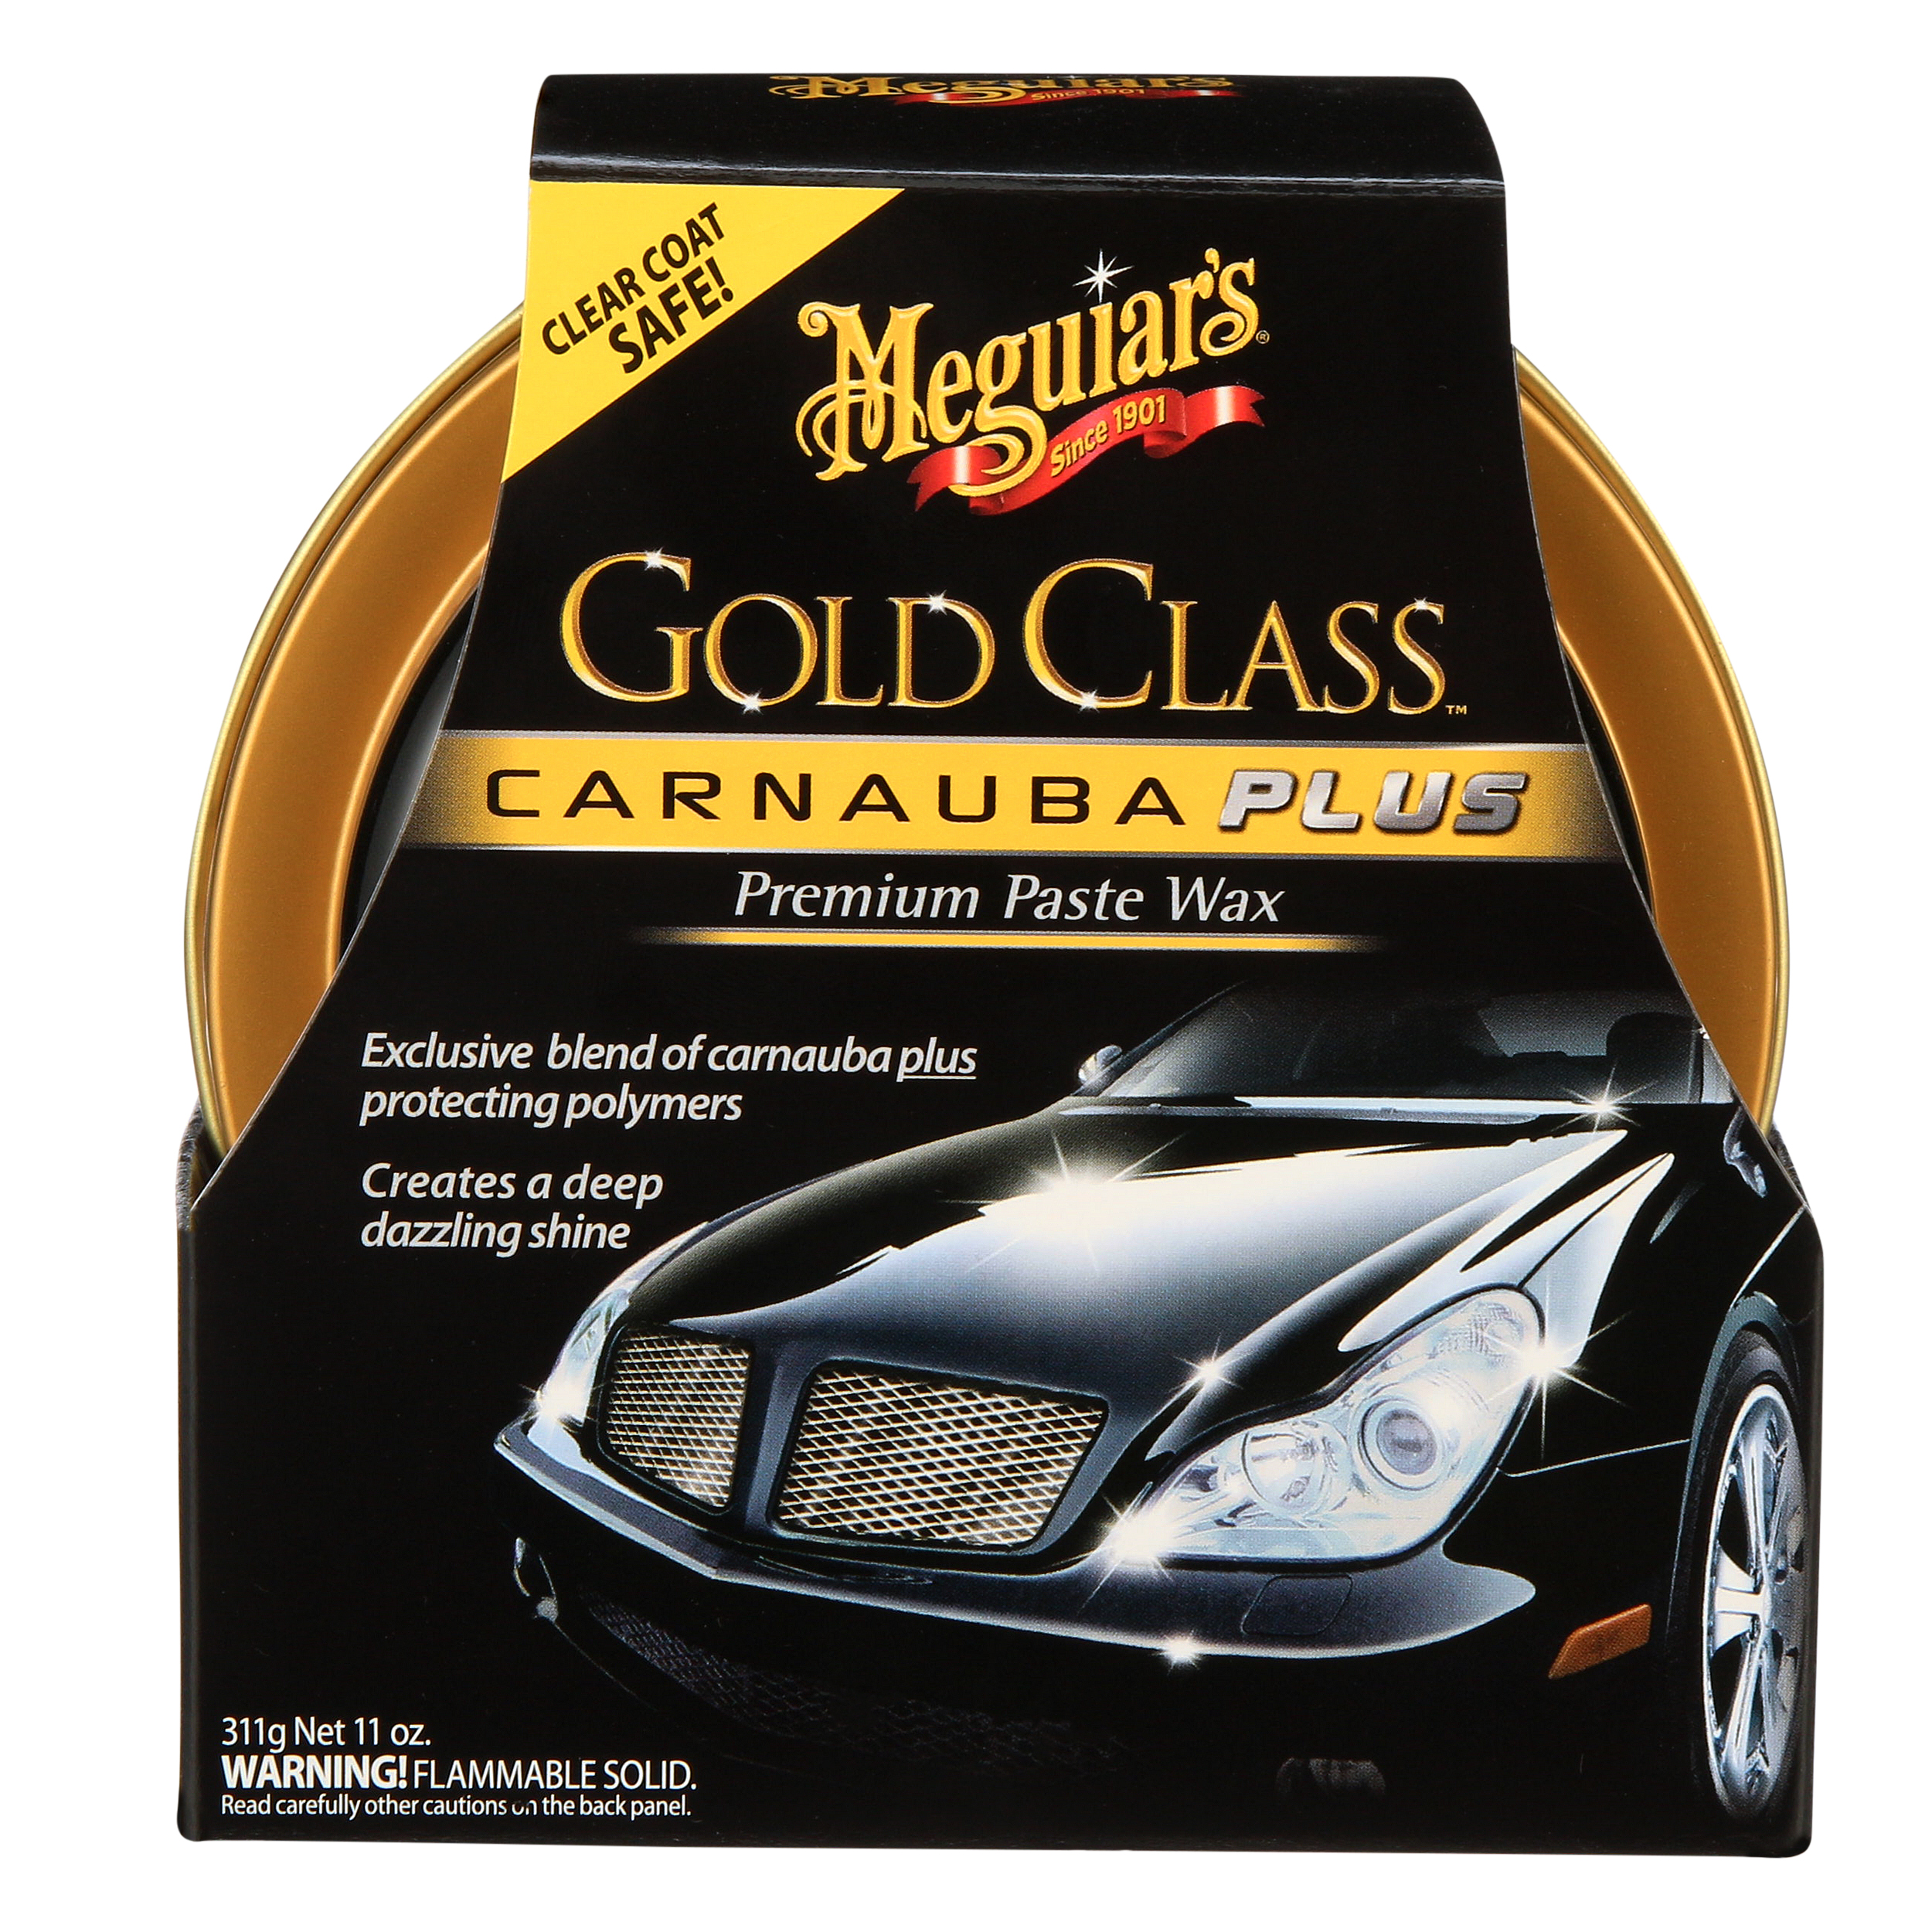 Meguiar's Gold Class Carnauba Plus Premium Paste Wax, G7014J, 11 oz - image 3 of 14